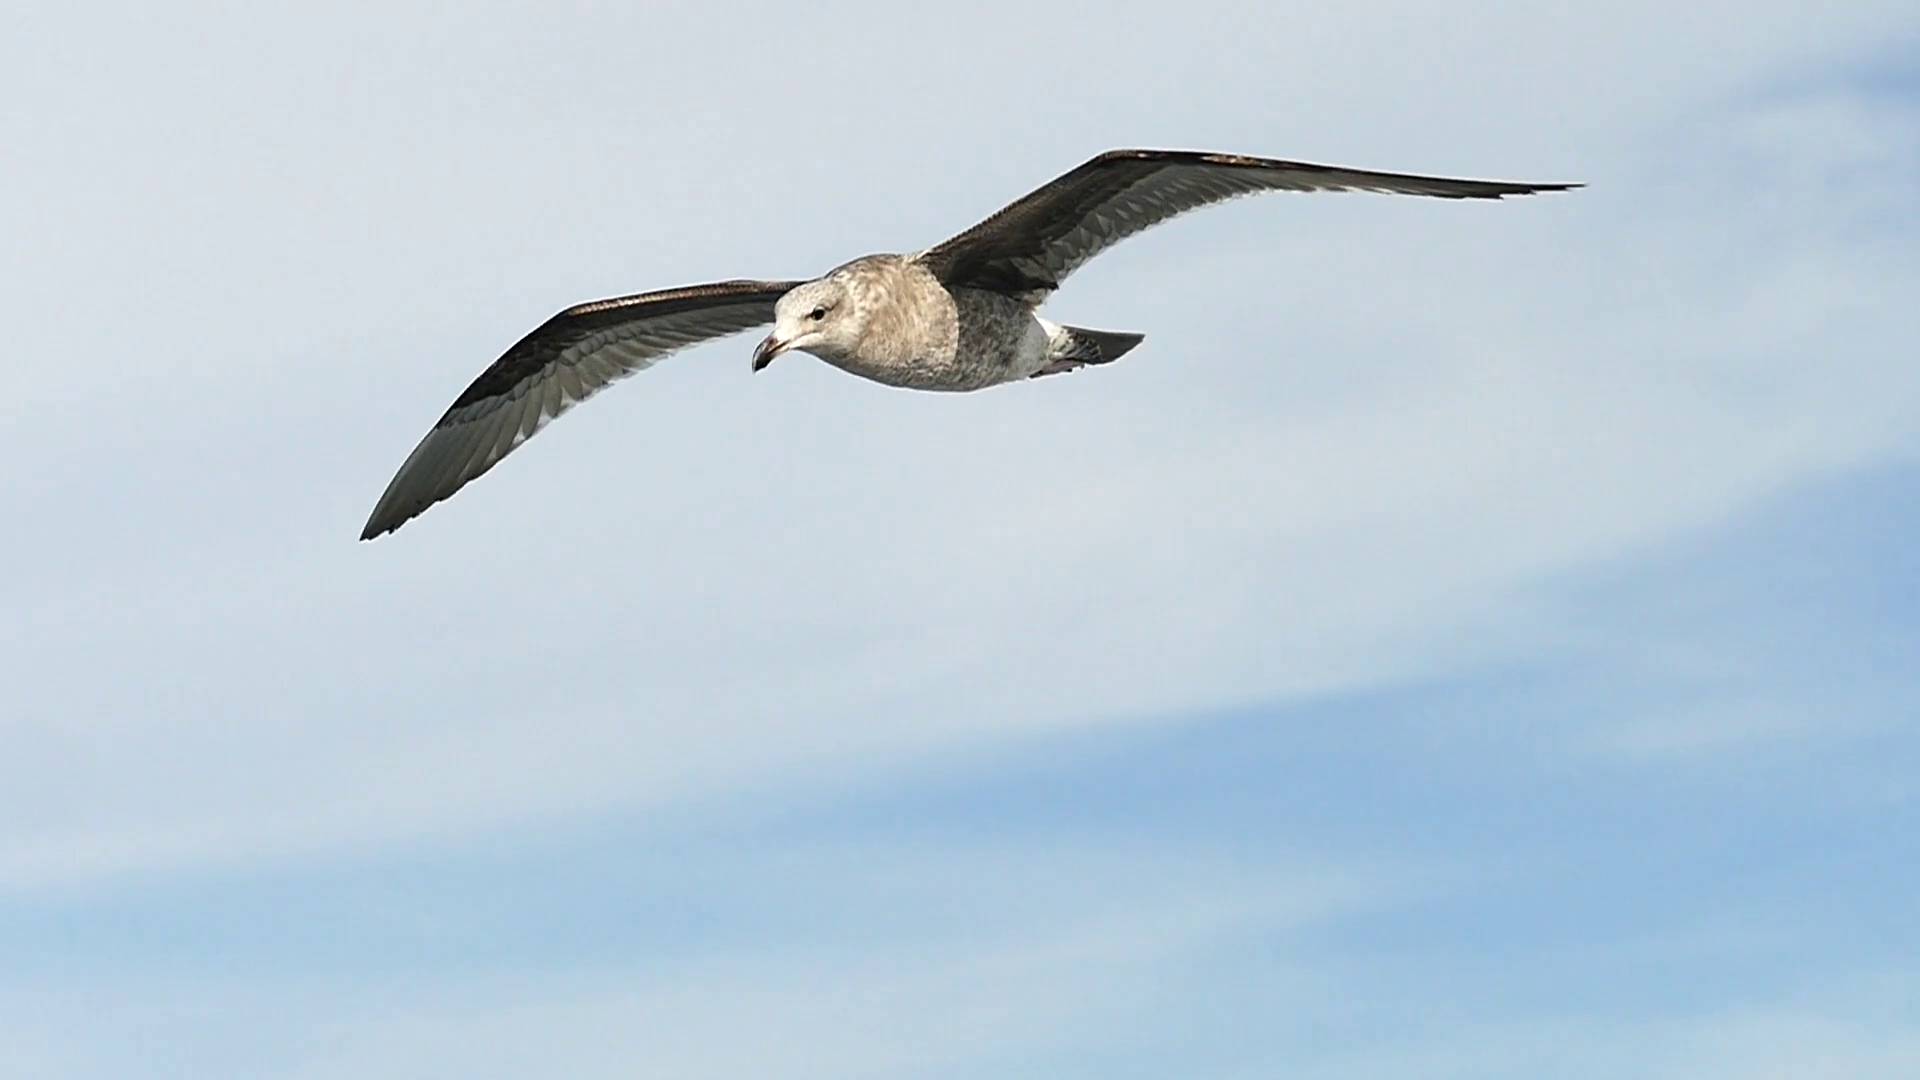 Seagull In Flight in slow motion Stock Video Footage - Videoblocks